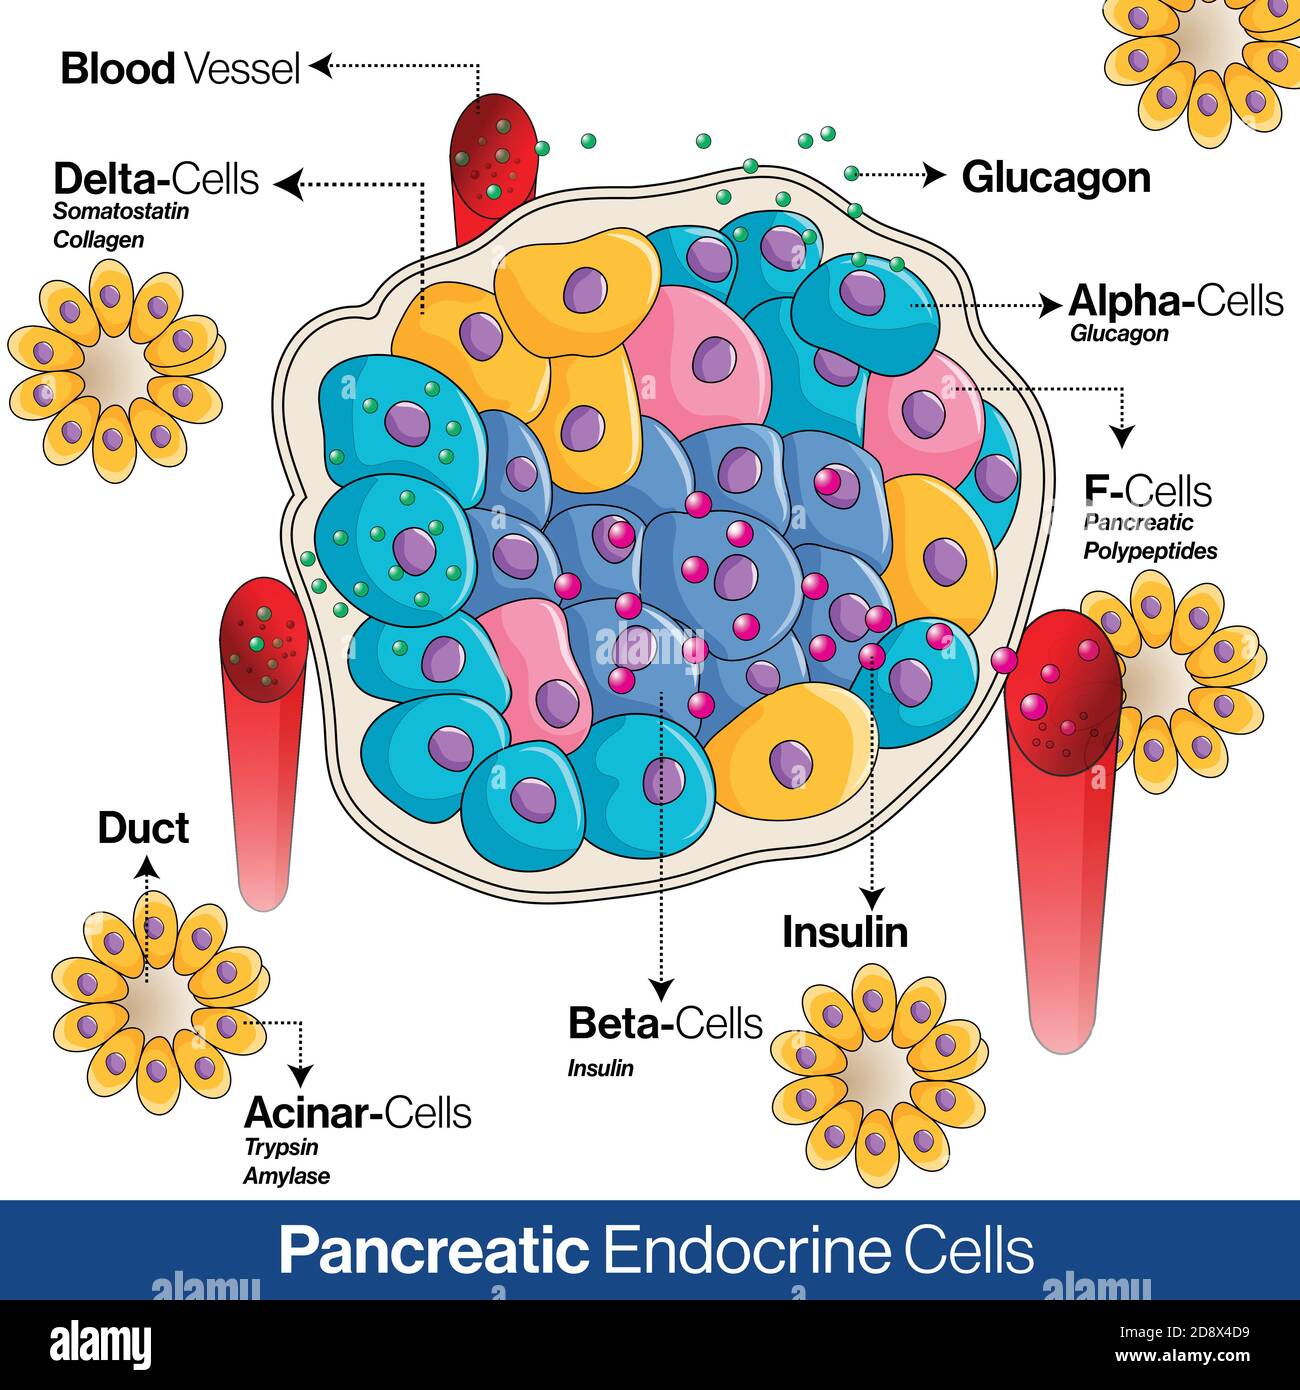 Anatomie des endokrinen Systems der Bauchspeicheldrüse, Alpha-, Beta- und Deltazellen, die Glukagon, Insulin und Somatostatin sezernieren Stock Vektor